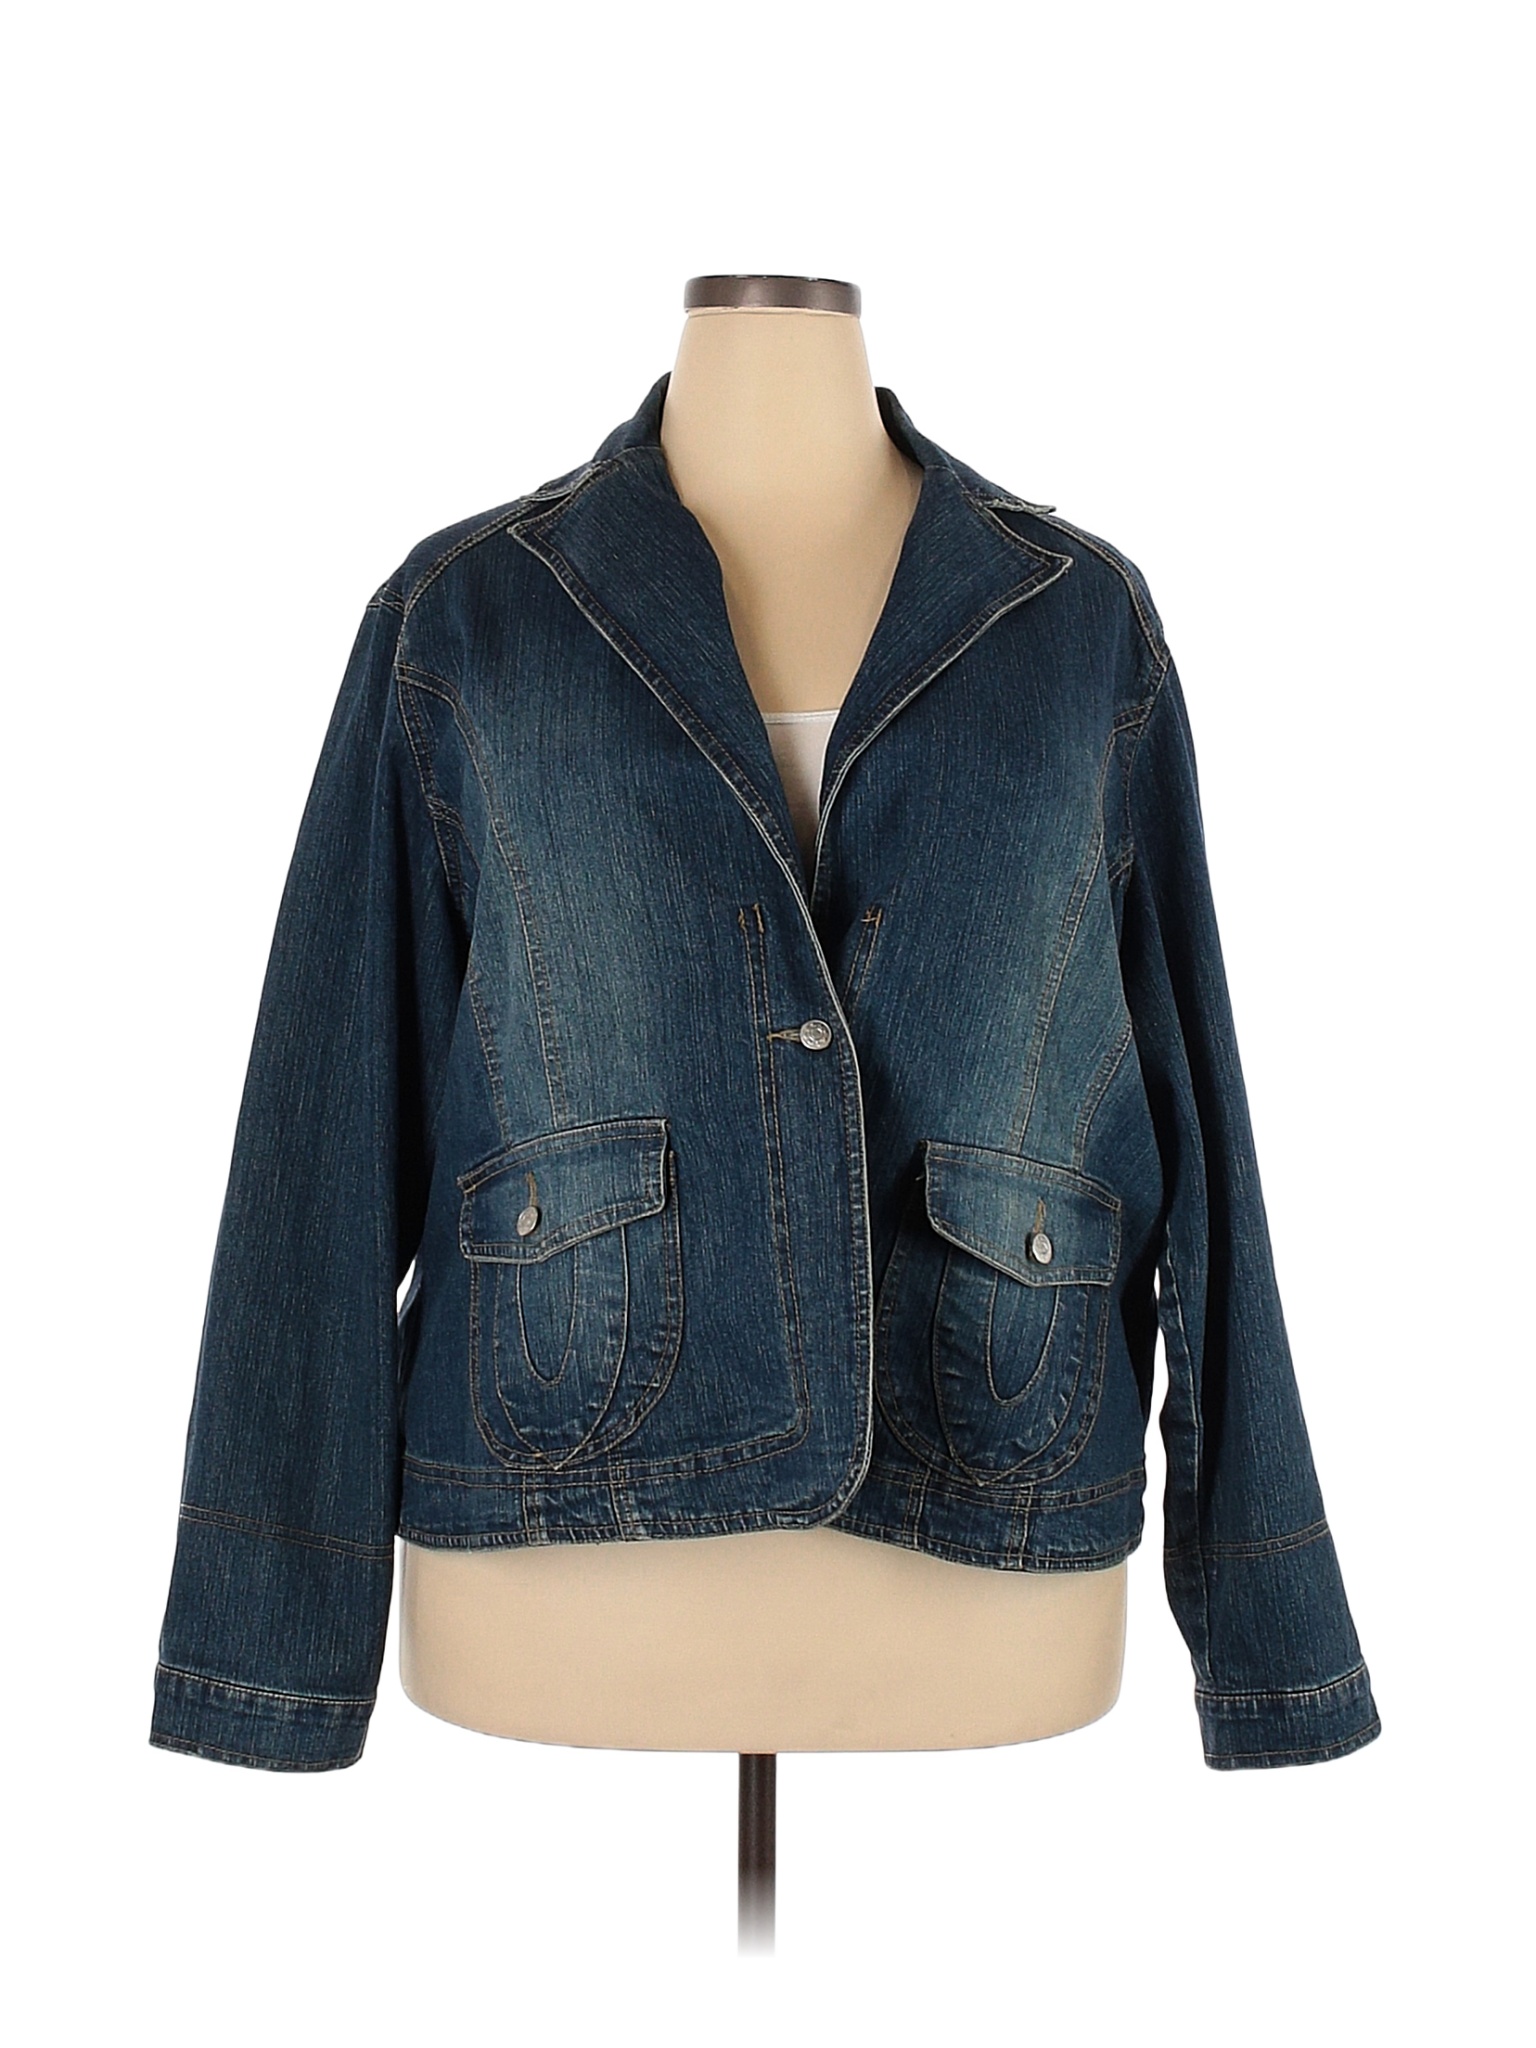 Miss Lili Solid Blue Jacket Size 3X (Plus) - 45% off | thredUP